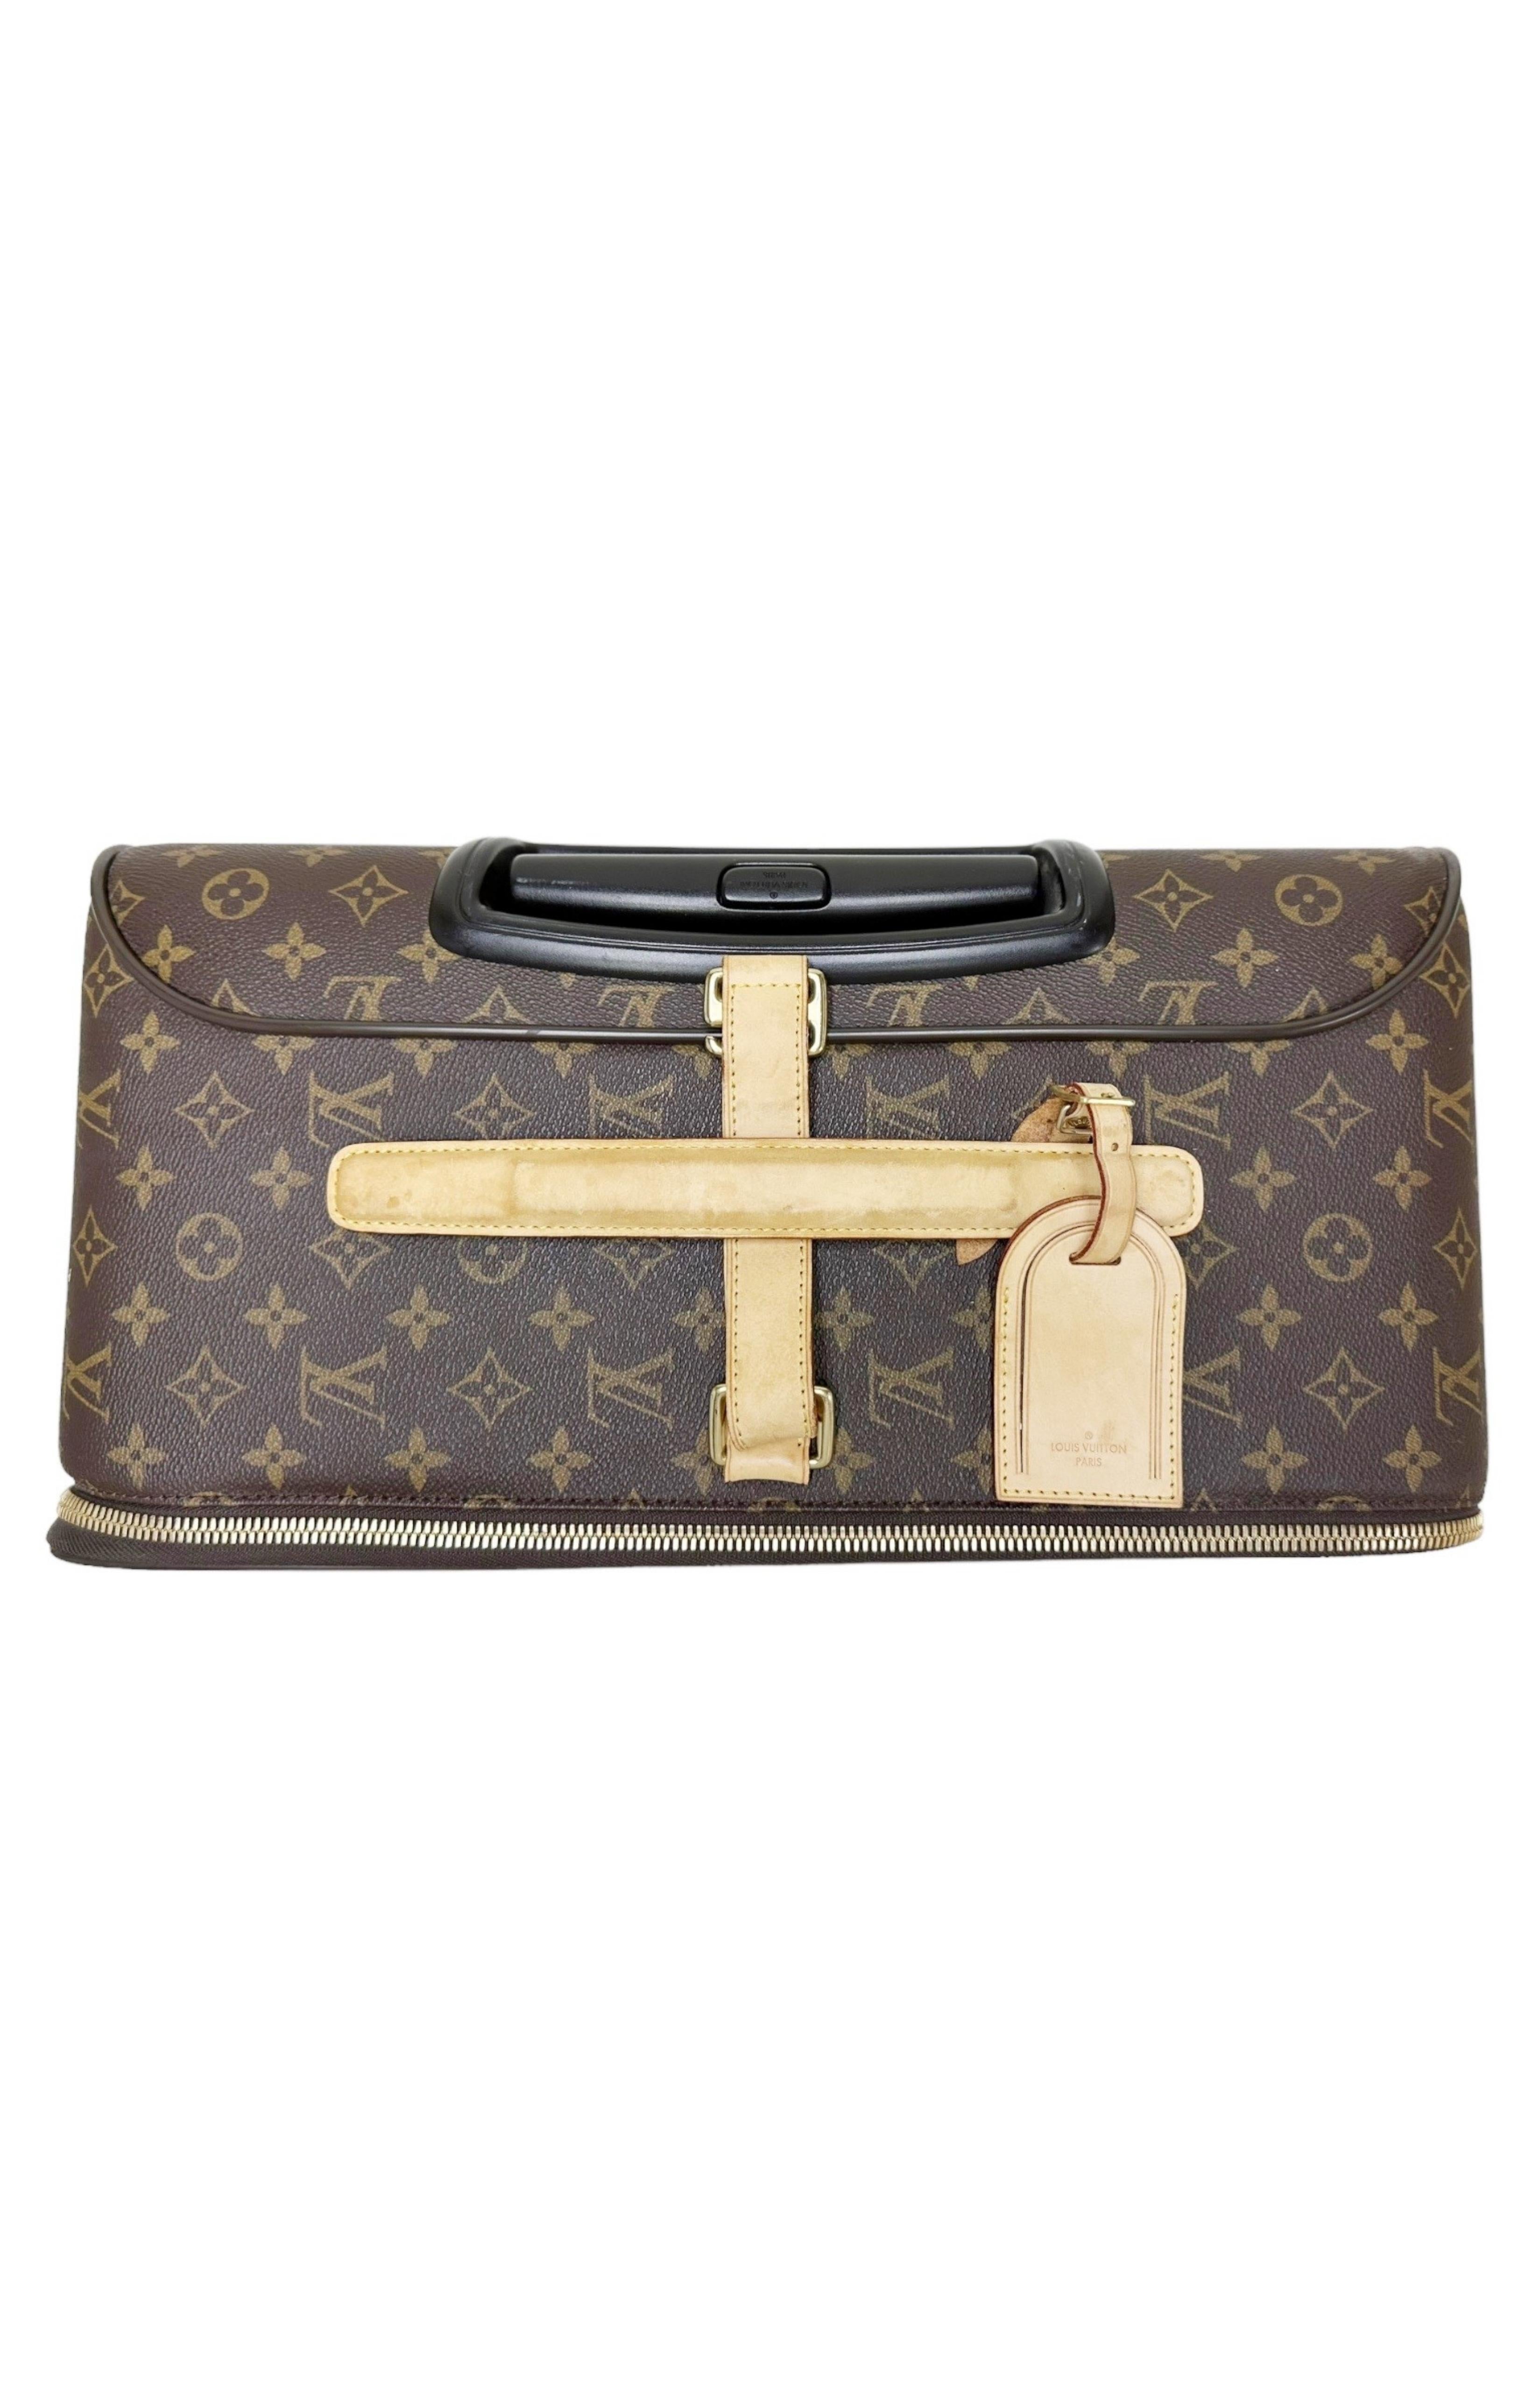 LOUIS VUITTON Luggage & Sleeve Set Size: 15 x 6.75 x 20.25; 18 han –  Kardashian Kloset